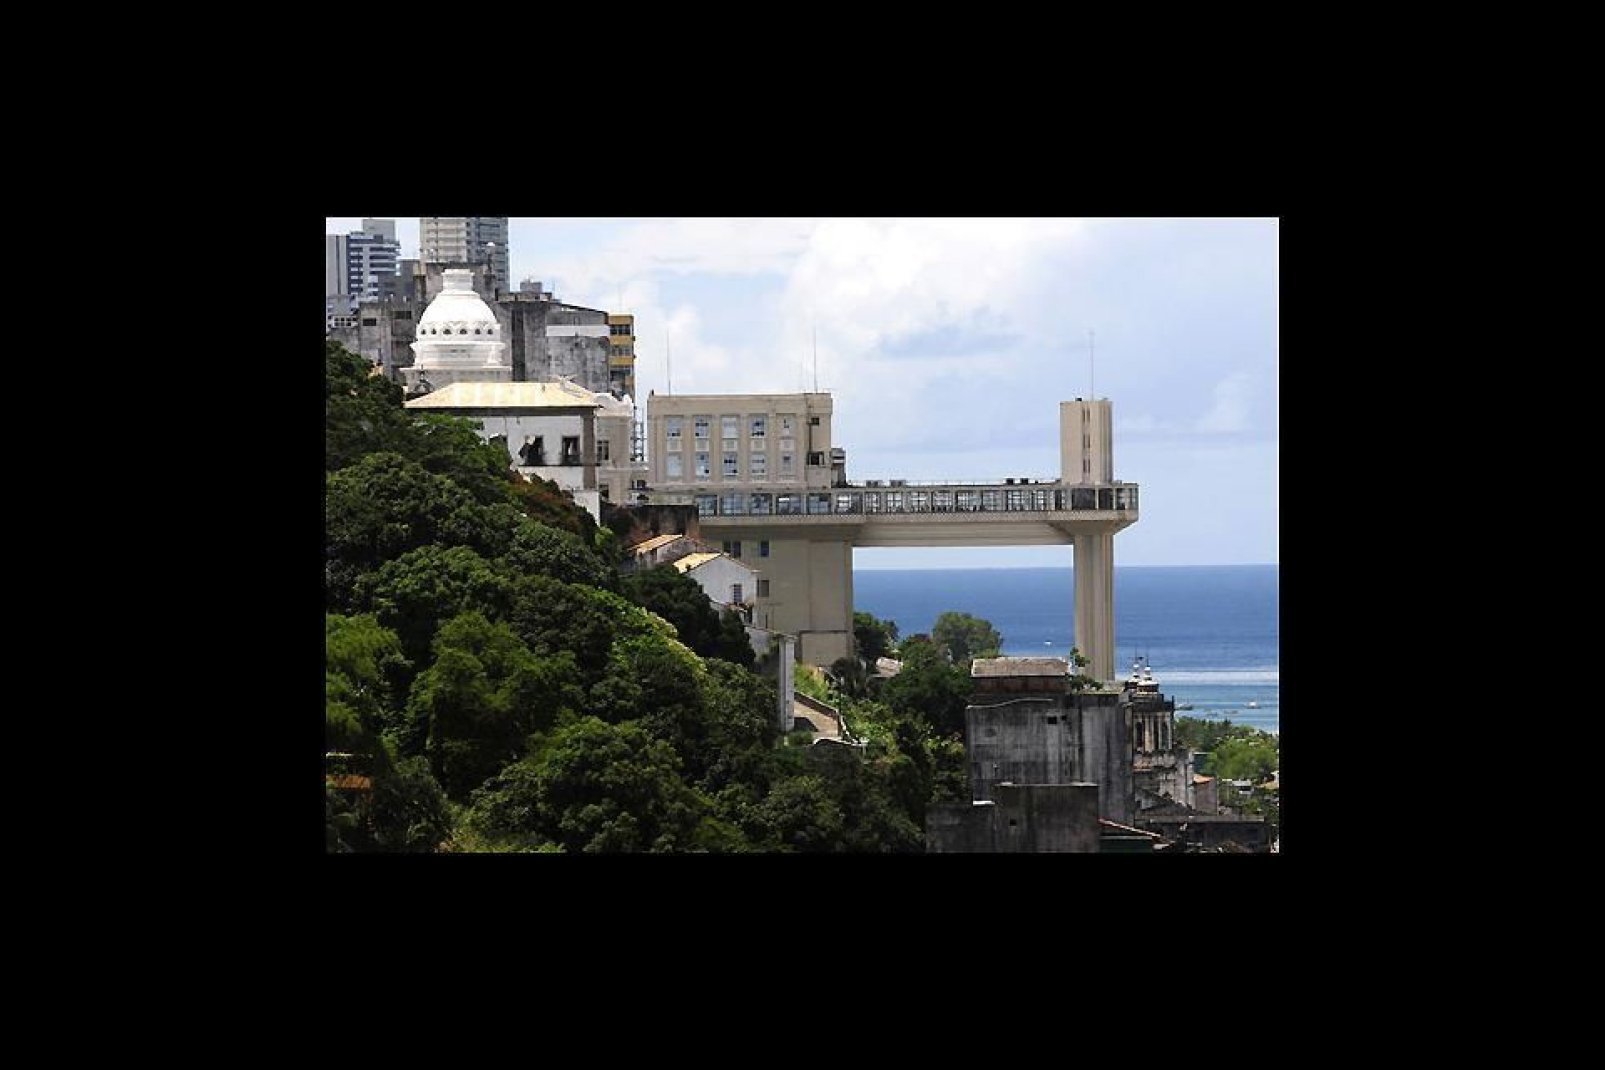 Símbolo de la ciudad, el ascensor Lacerda se inauguró en 1930. En la cima podrás disfrutar con las magníficas vistas sobre la bahía de Todos los Santos.